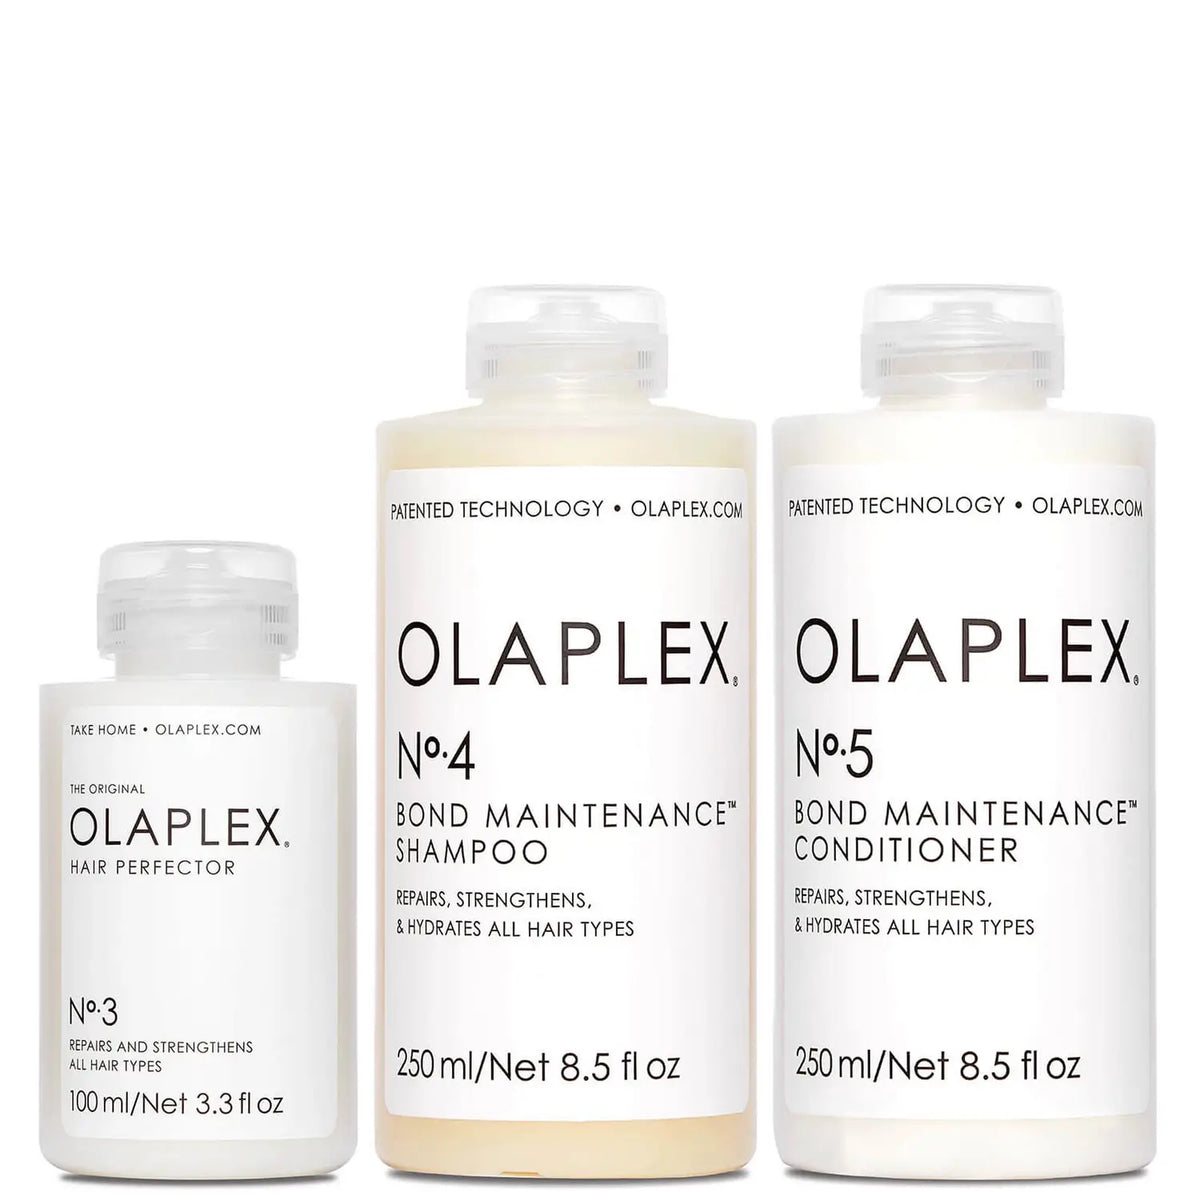 OLAPLEX Take Home Treatment Kit